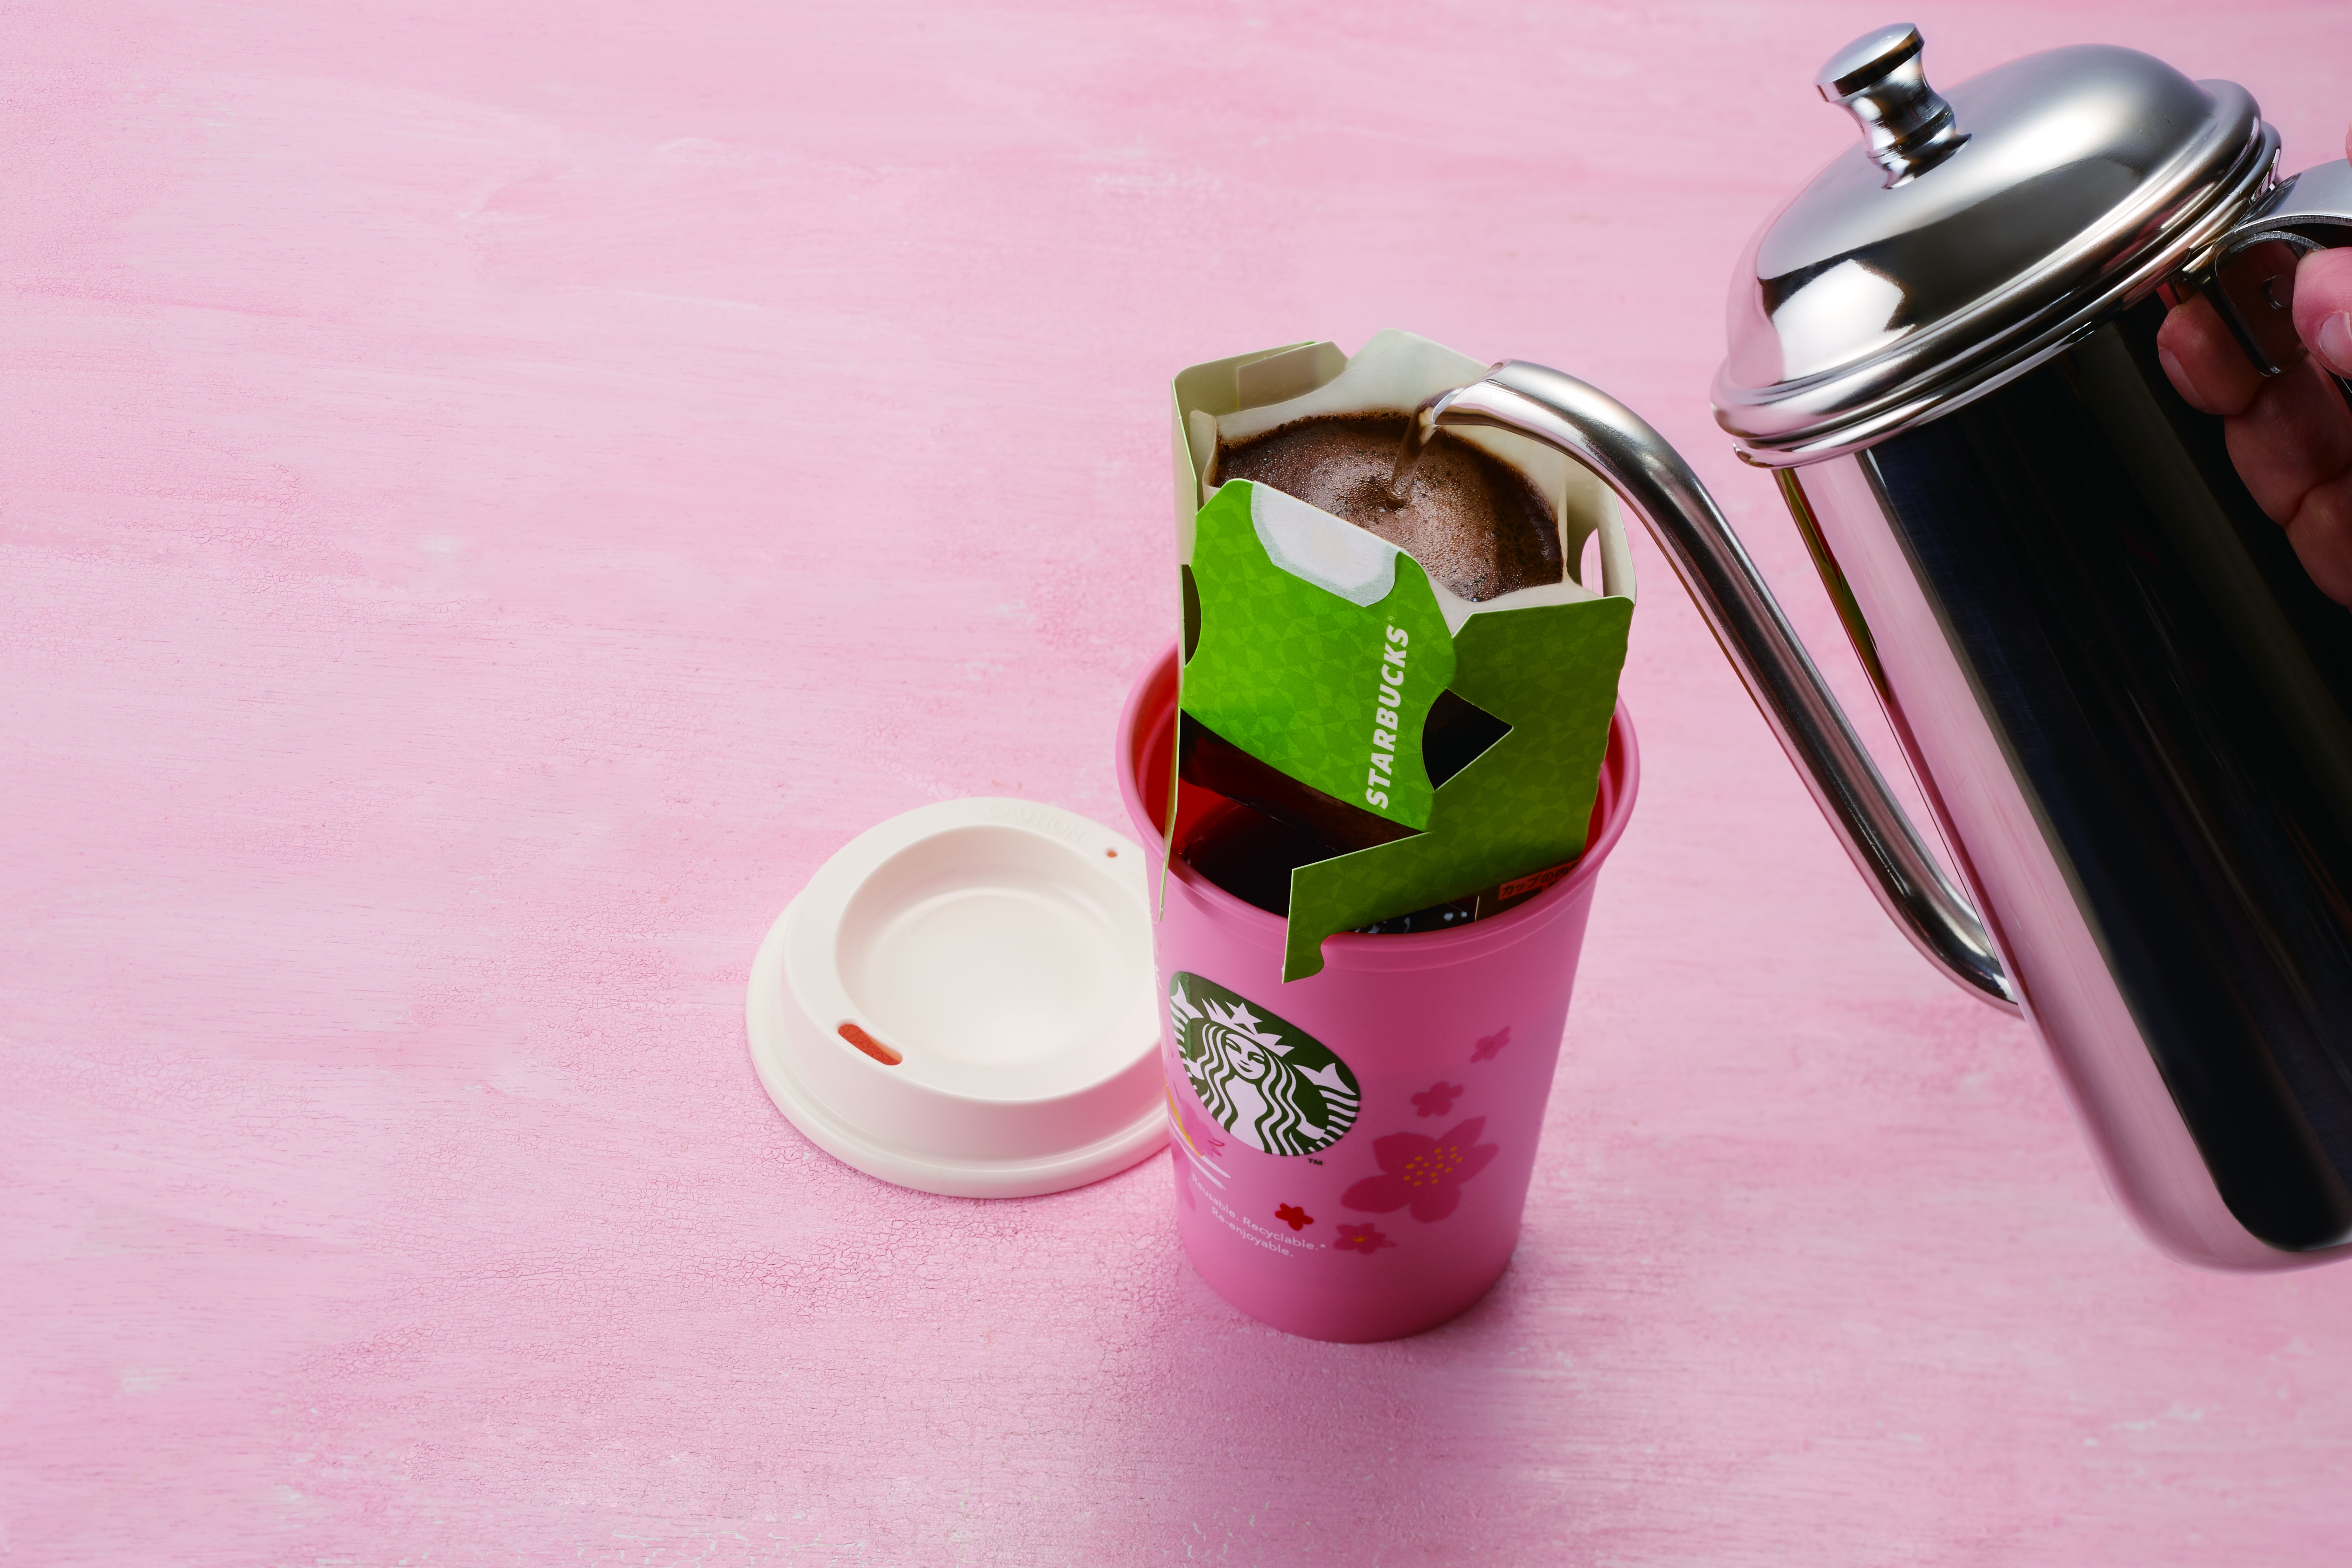 Starbucks Japan SAKURA 2020 Reusable 5 Cups Set with organic cotton bags NEW 